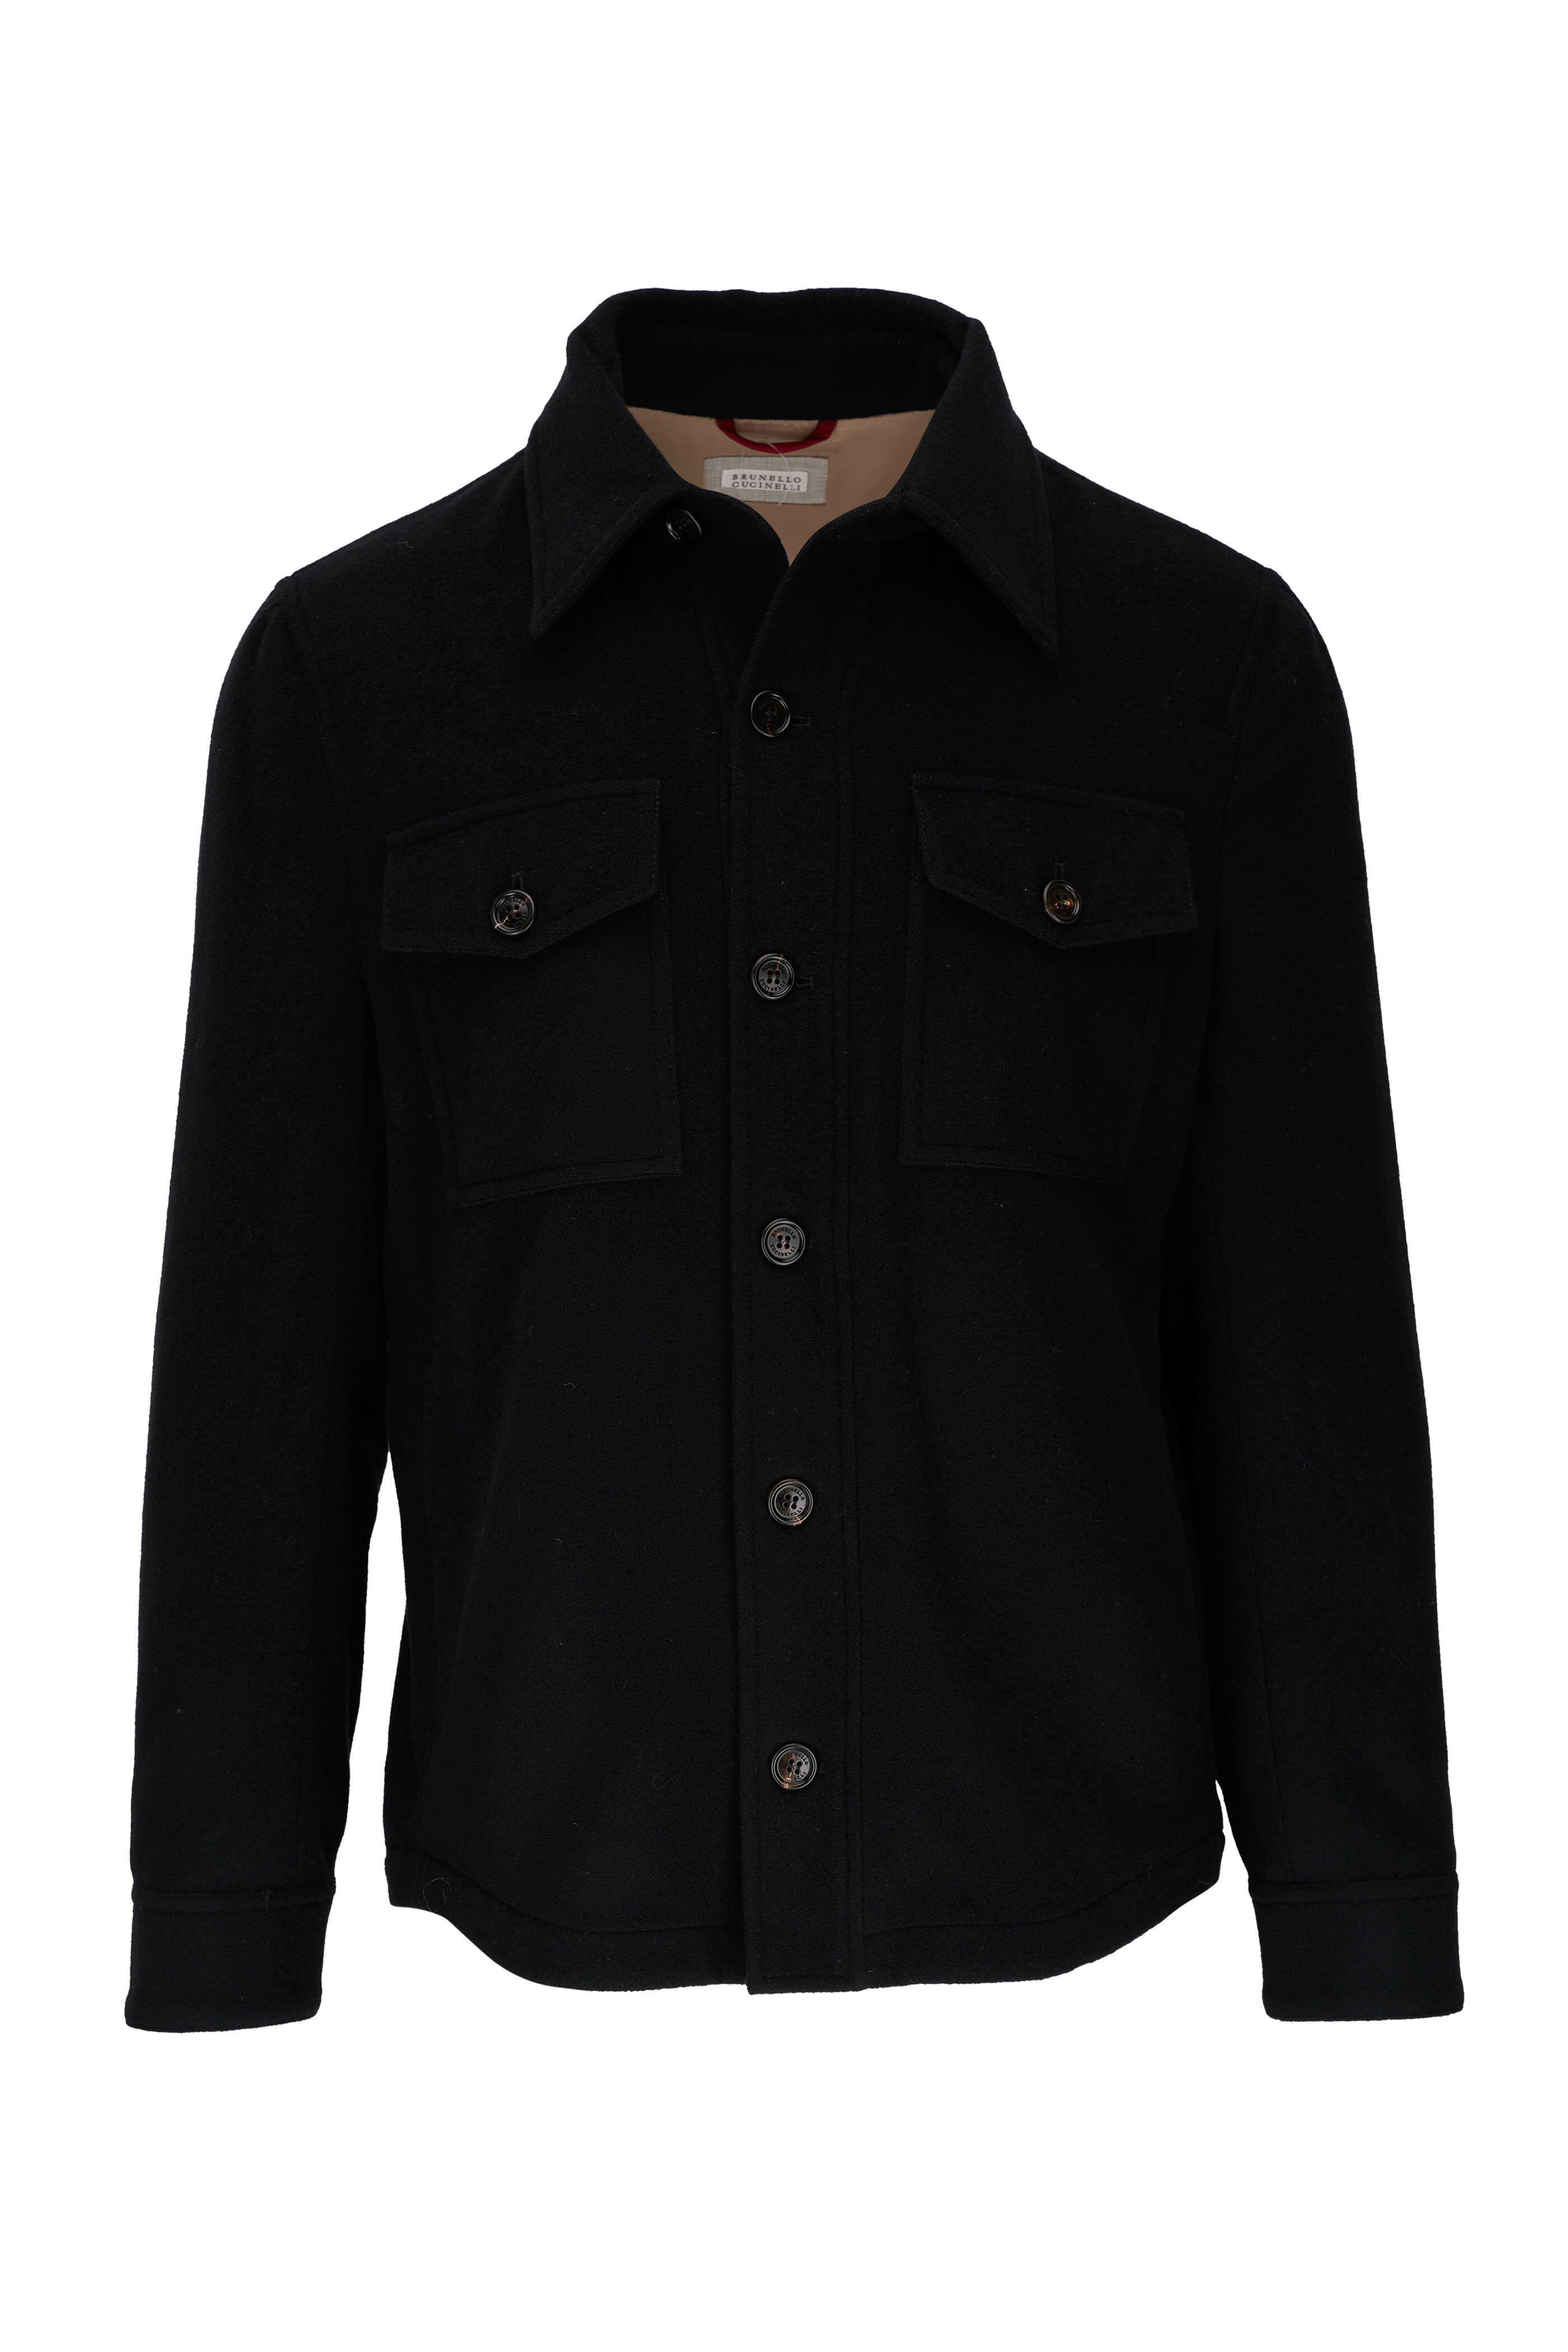 Brunello Cucinelli - Black Cashmere Shirt Jacket